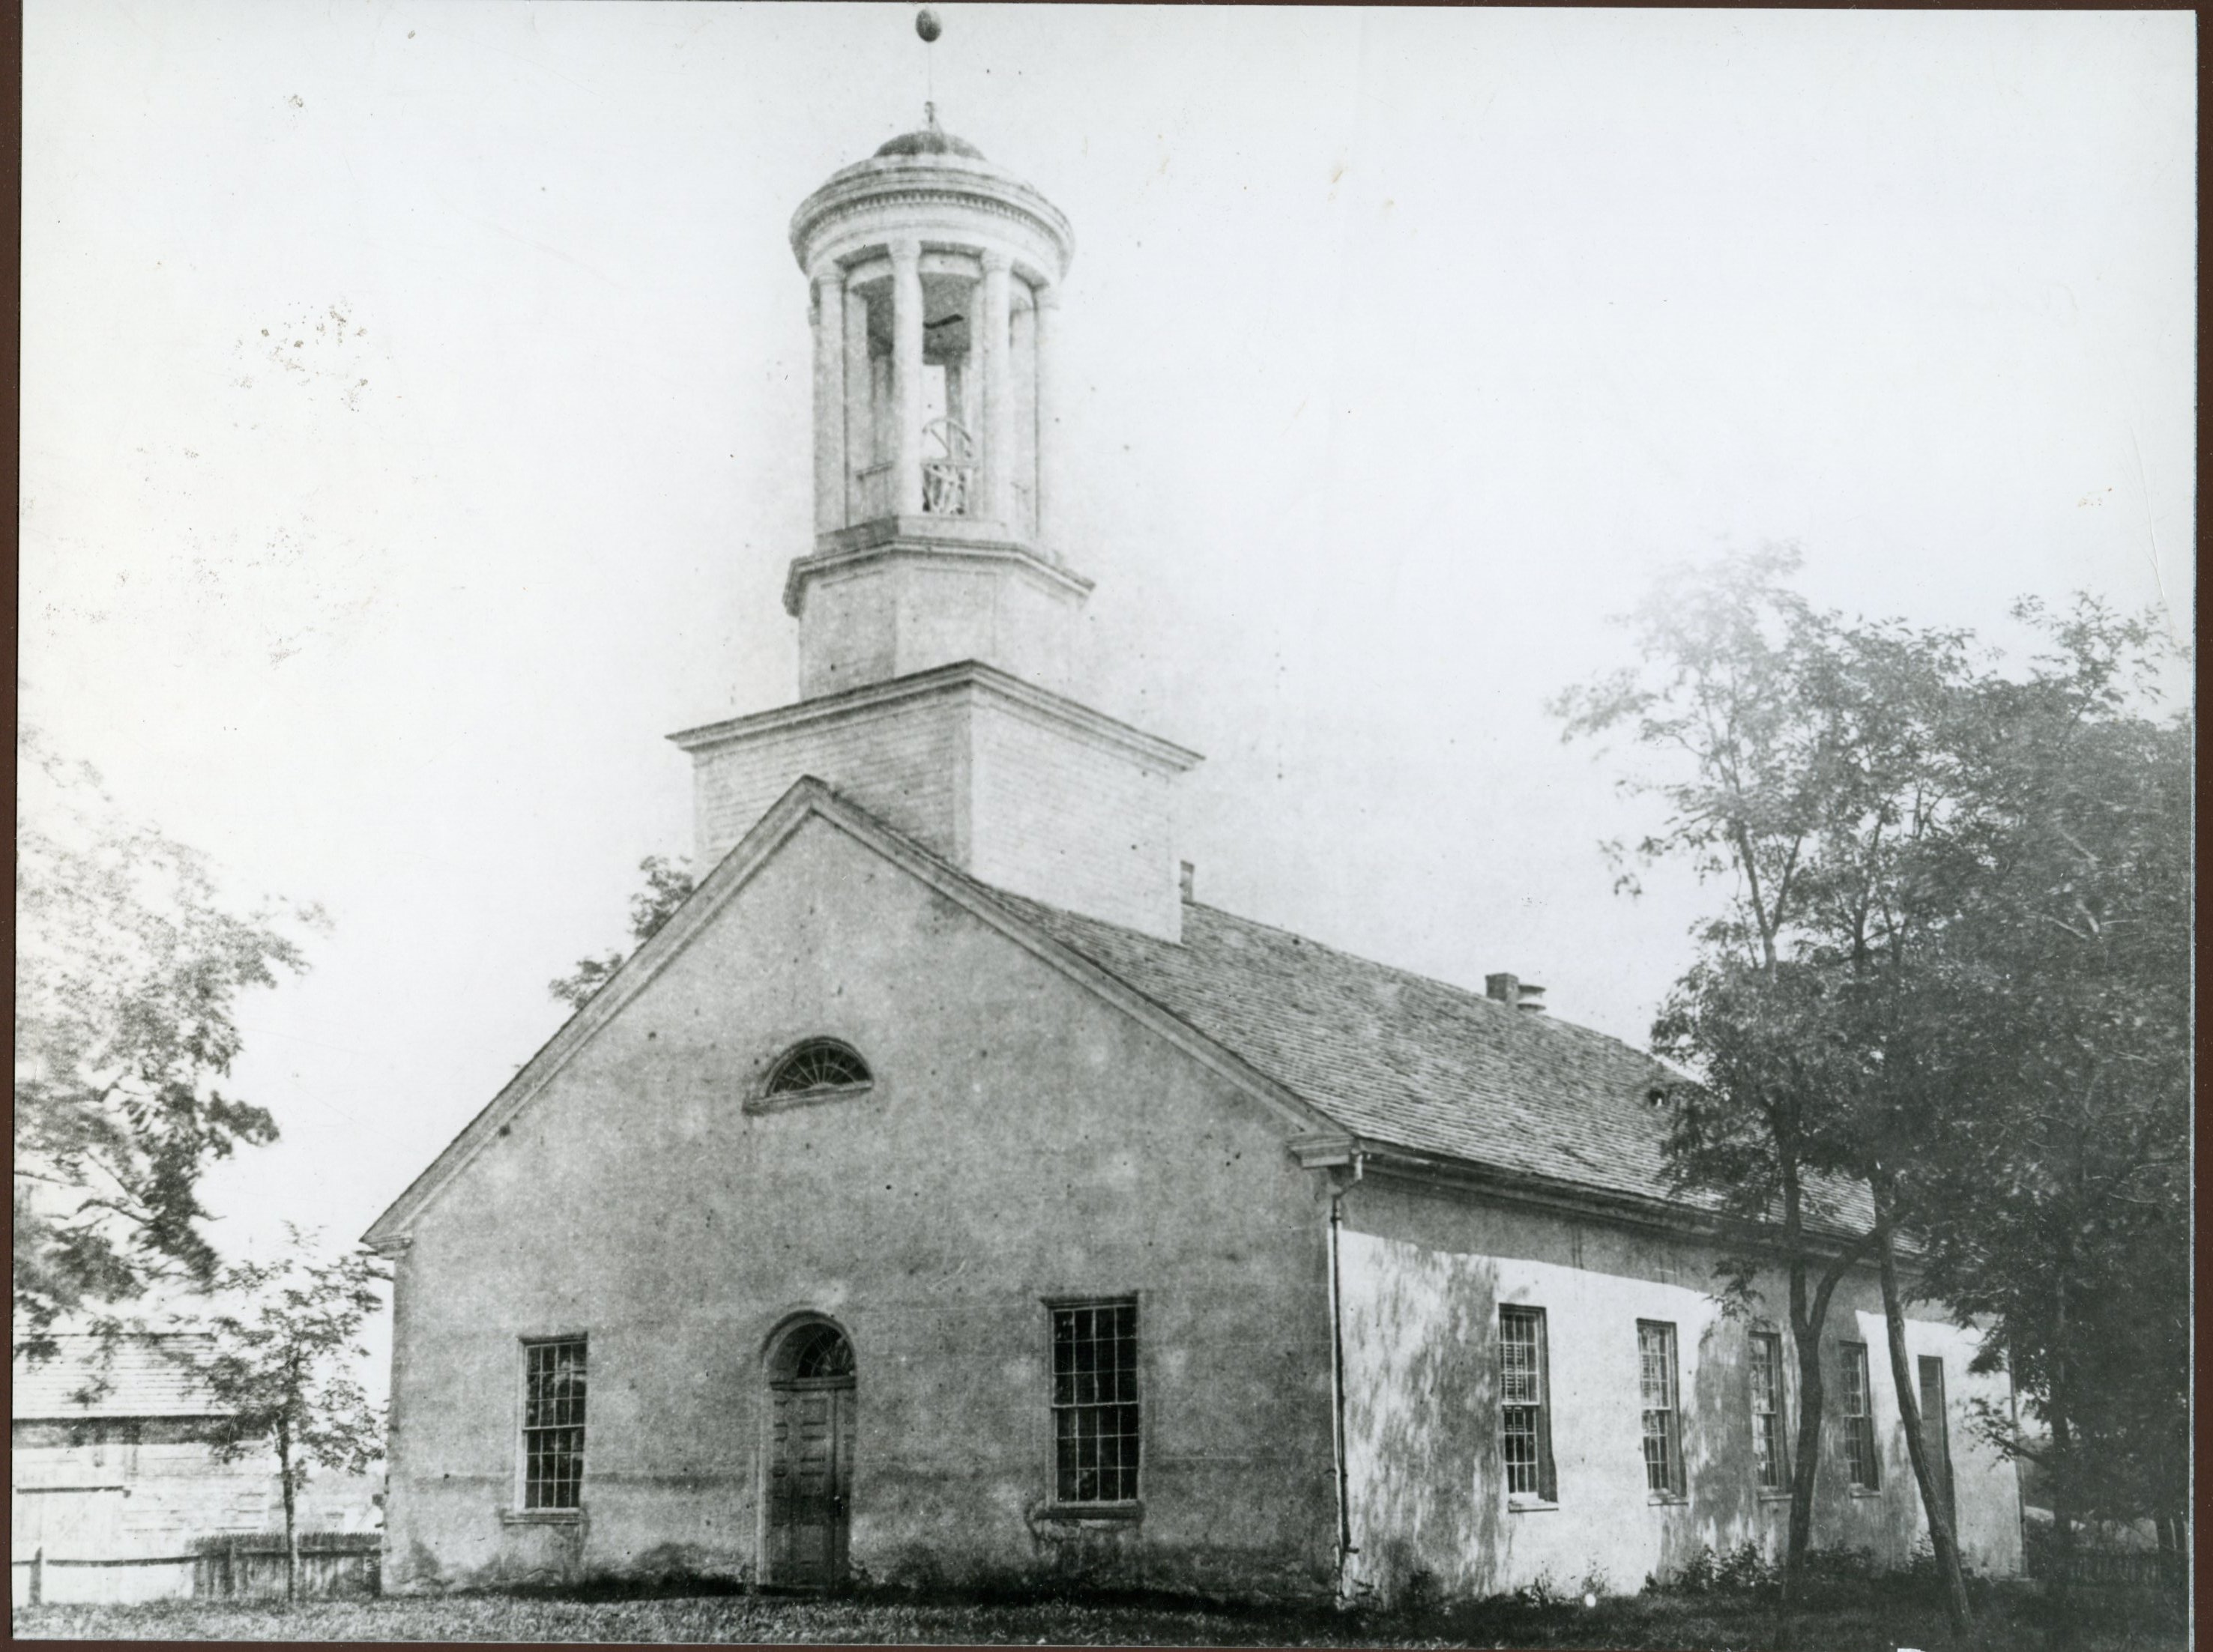 Photo of the Big Spring Presbyterian Church circa 1880